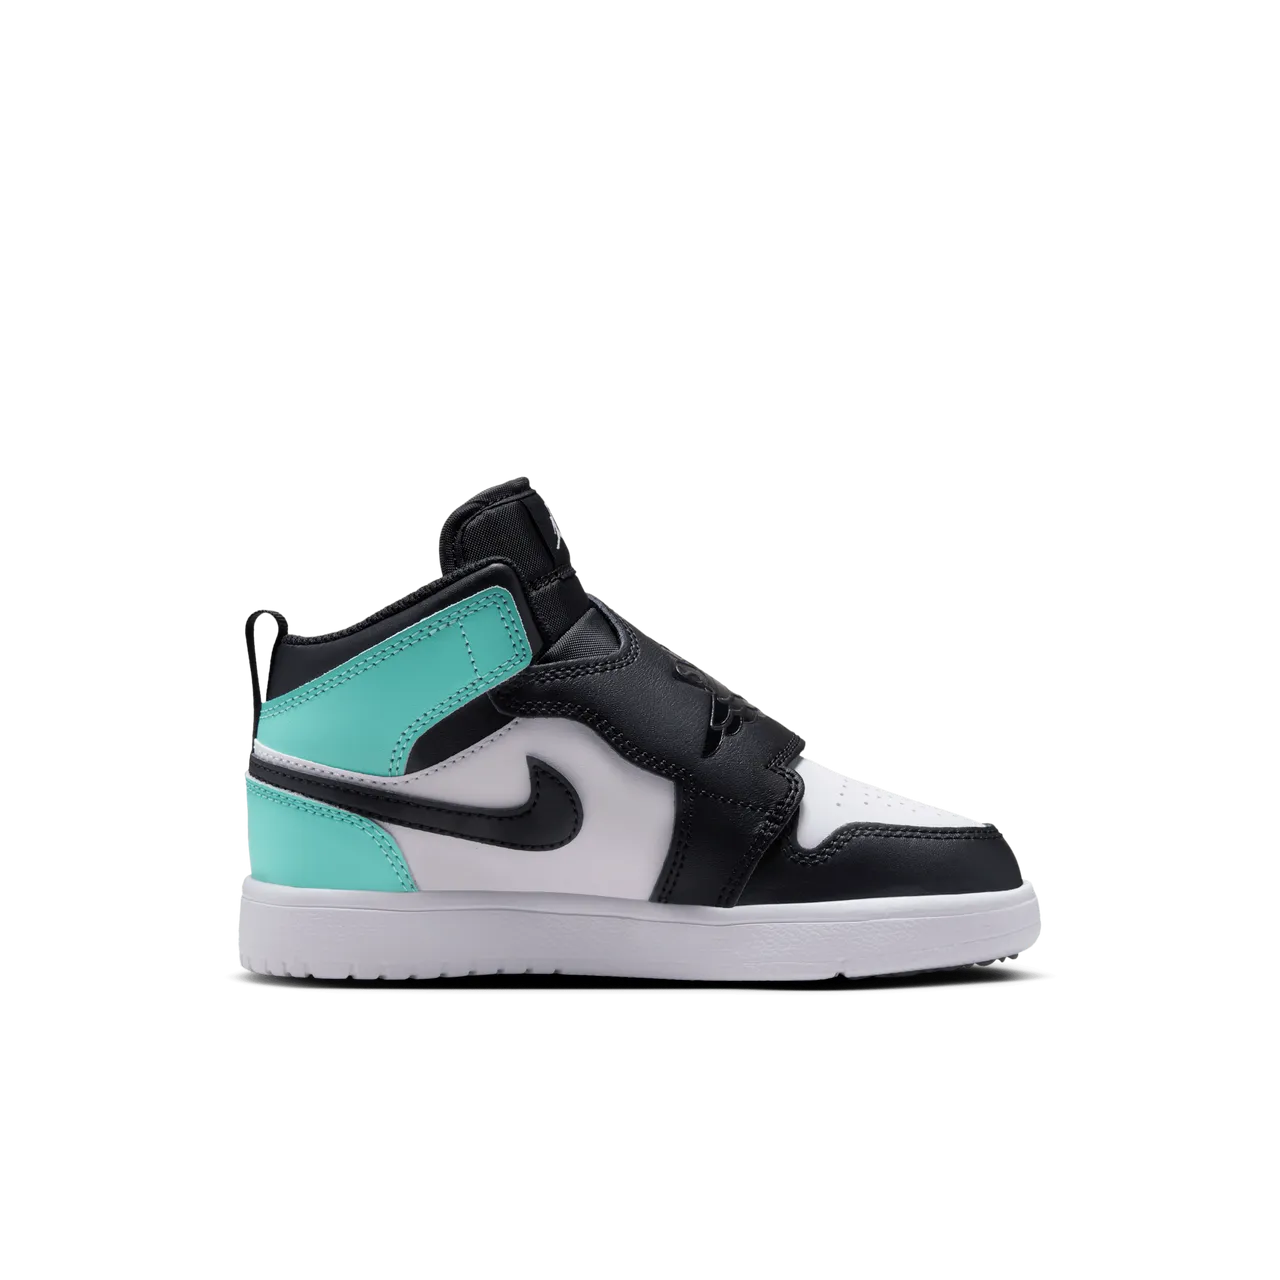 Sky Jordan 1 Schuh für jüngere Kinder - Schwarz